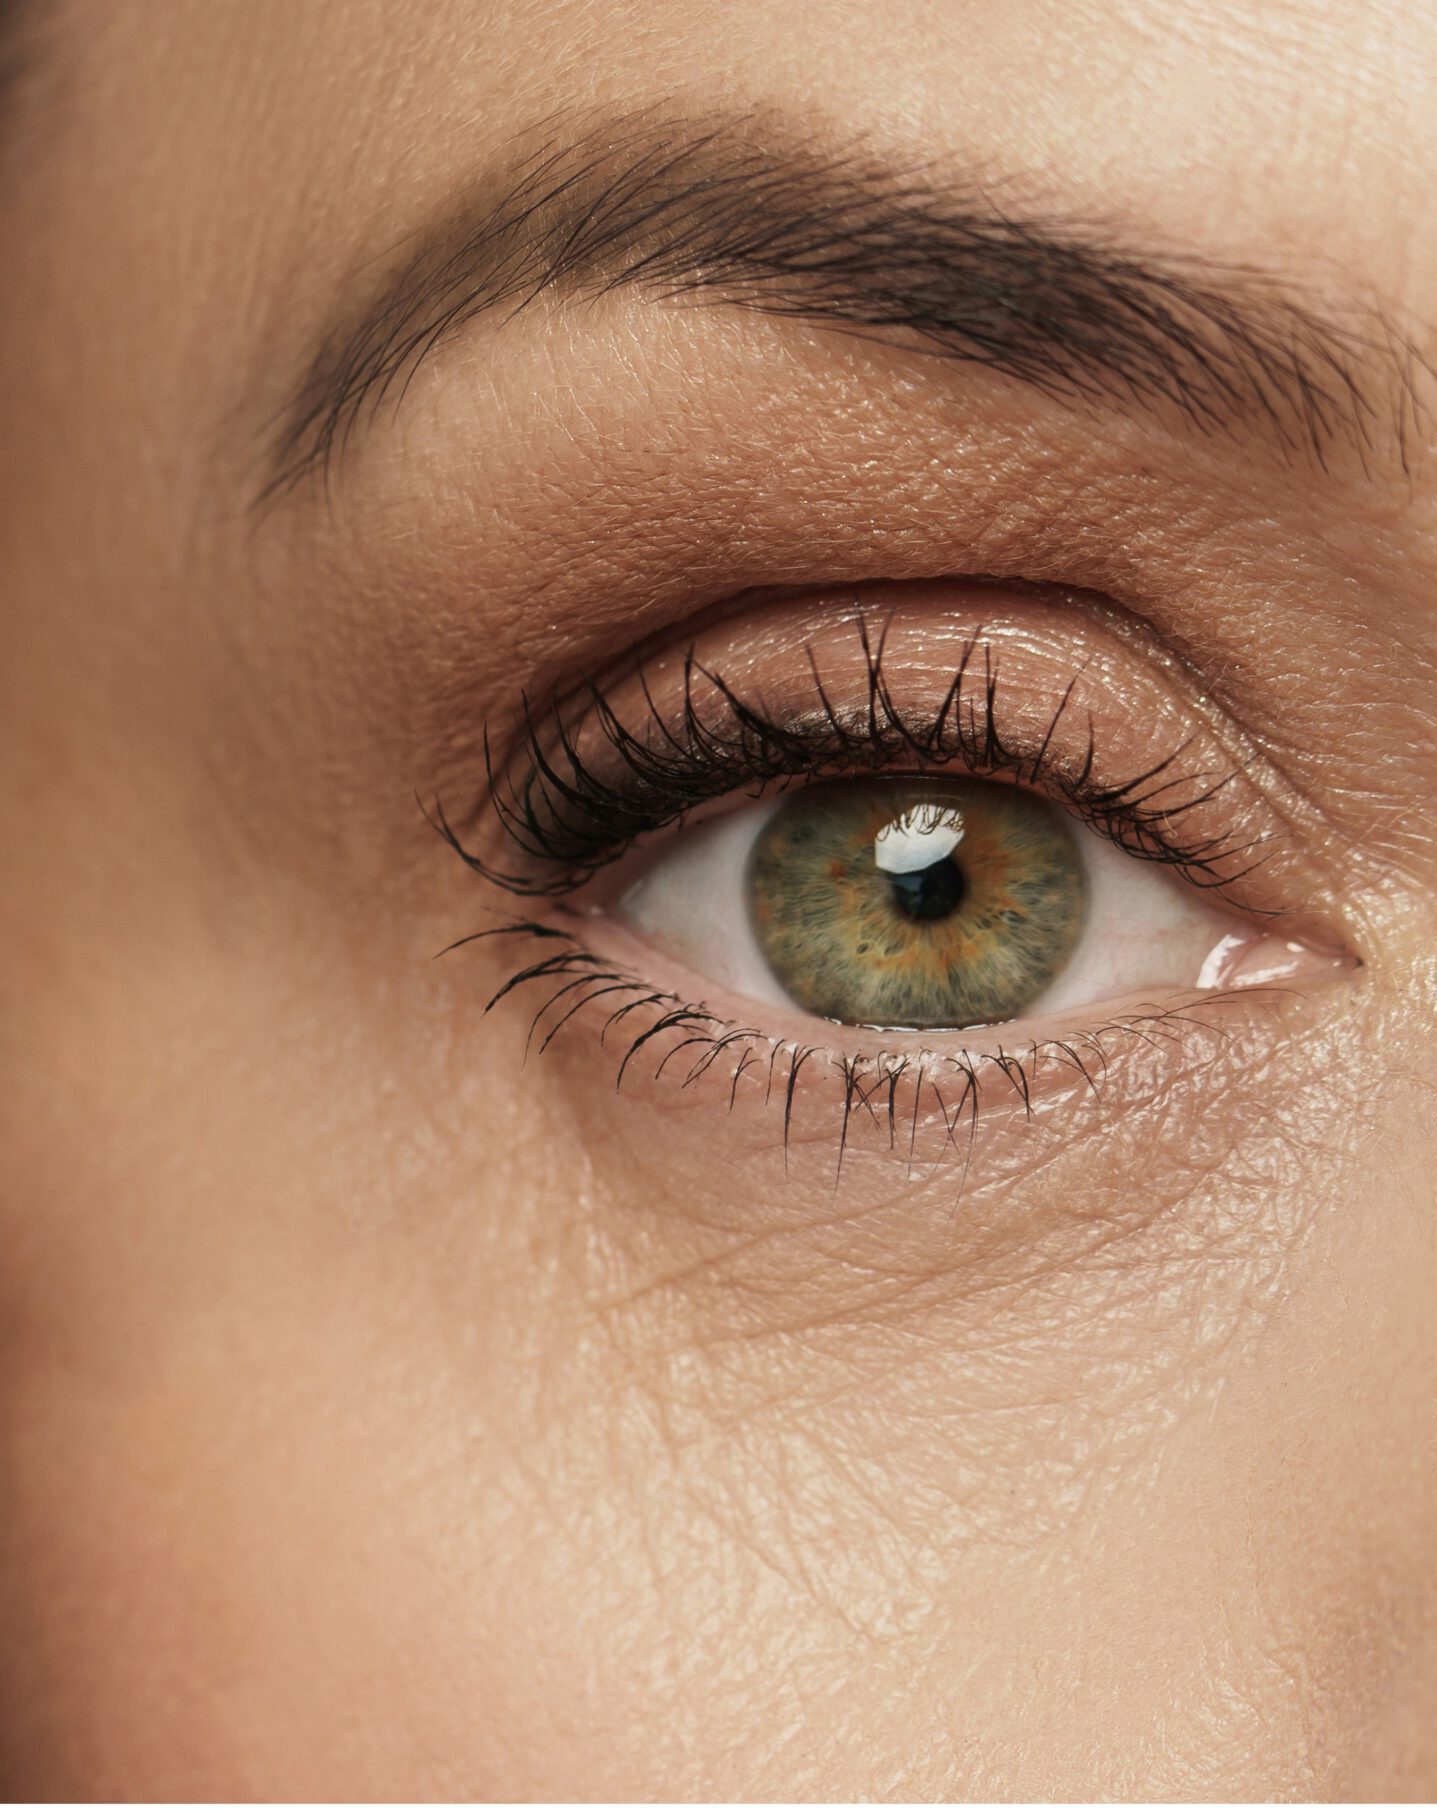 Ein Teil des weibliches Gesicht, zu sehen ist das Auge und die Augenbraue